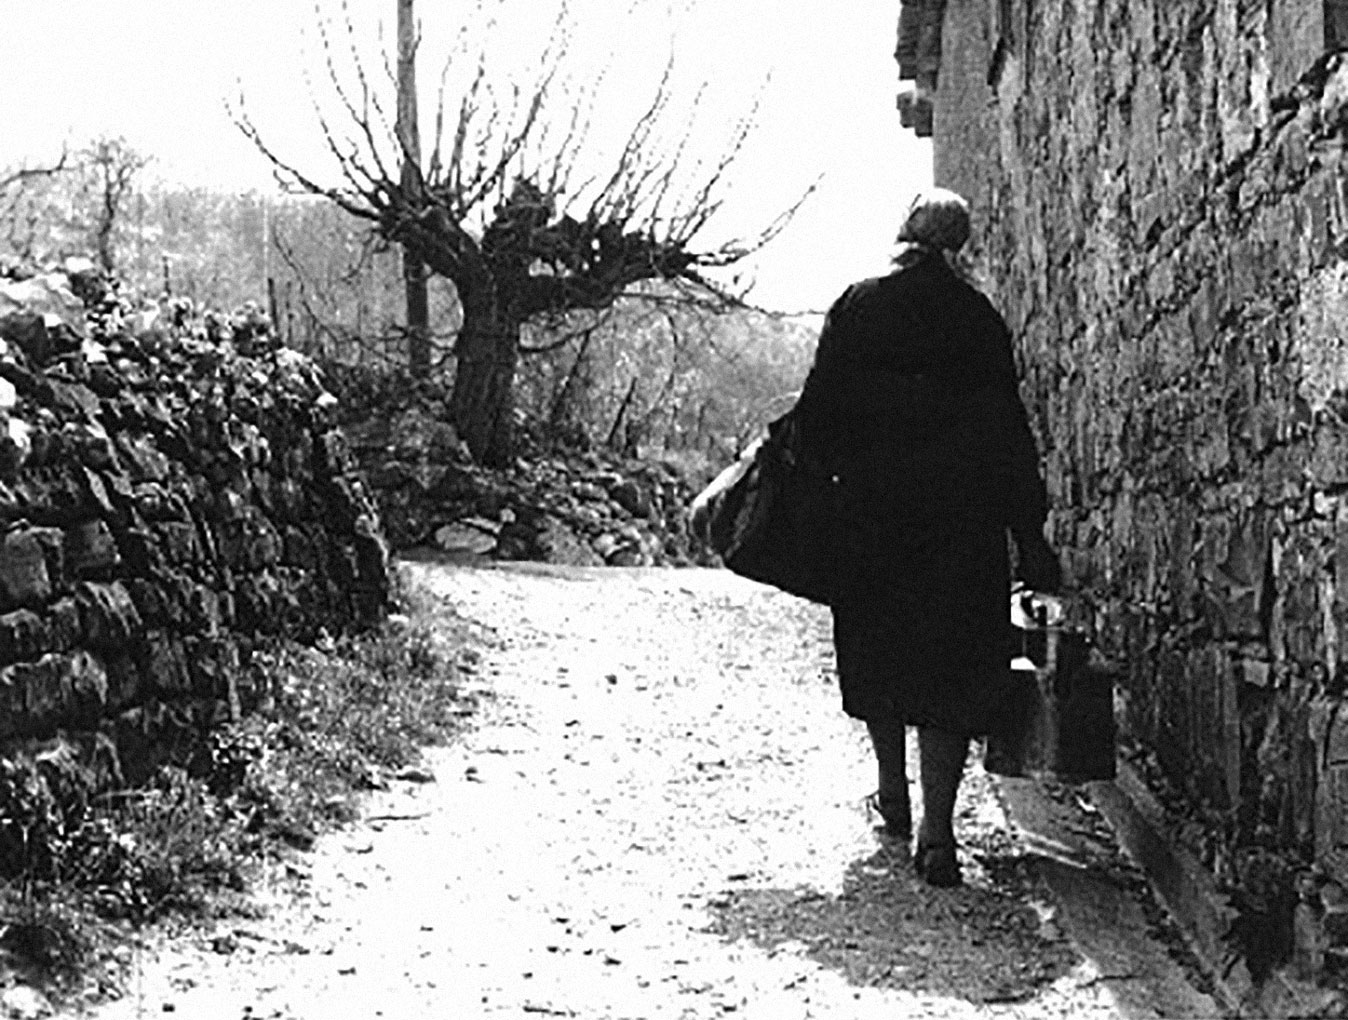 Mlekarica se vrača domov. Dolina, 13.4.1960 - Foto Mario Magajna.
Una donna del latte torna a casa. San Dorligo della Valle, 13/4/1960 - Foto Mario Magajna.